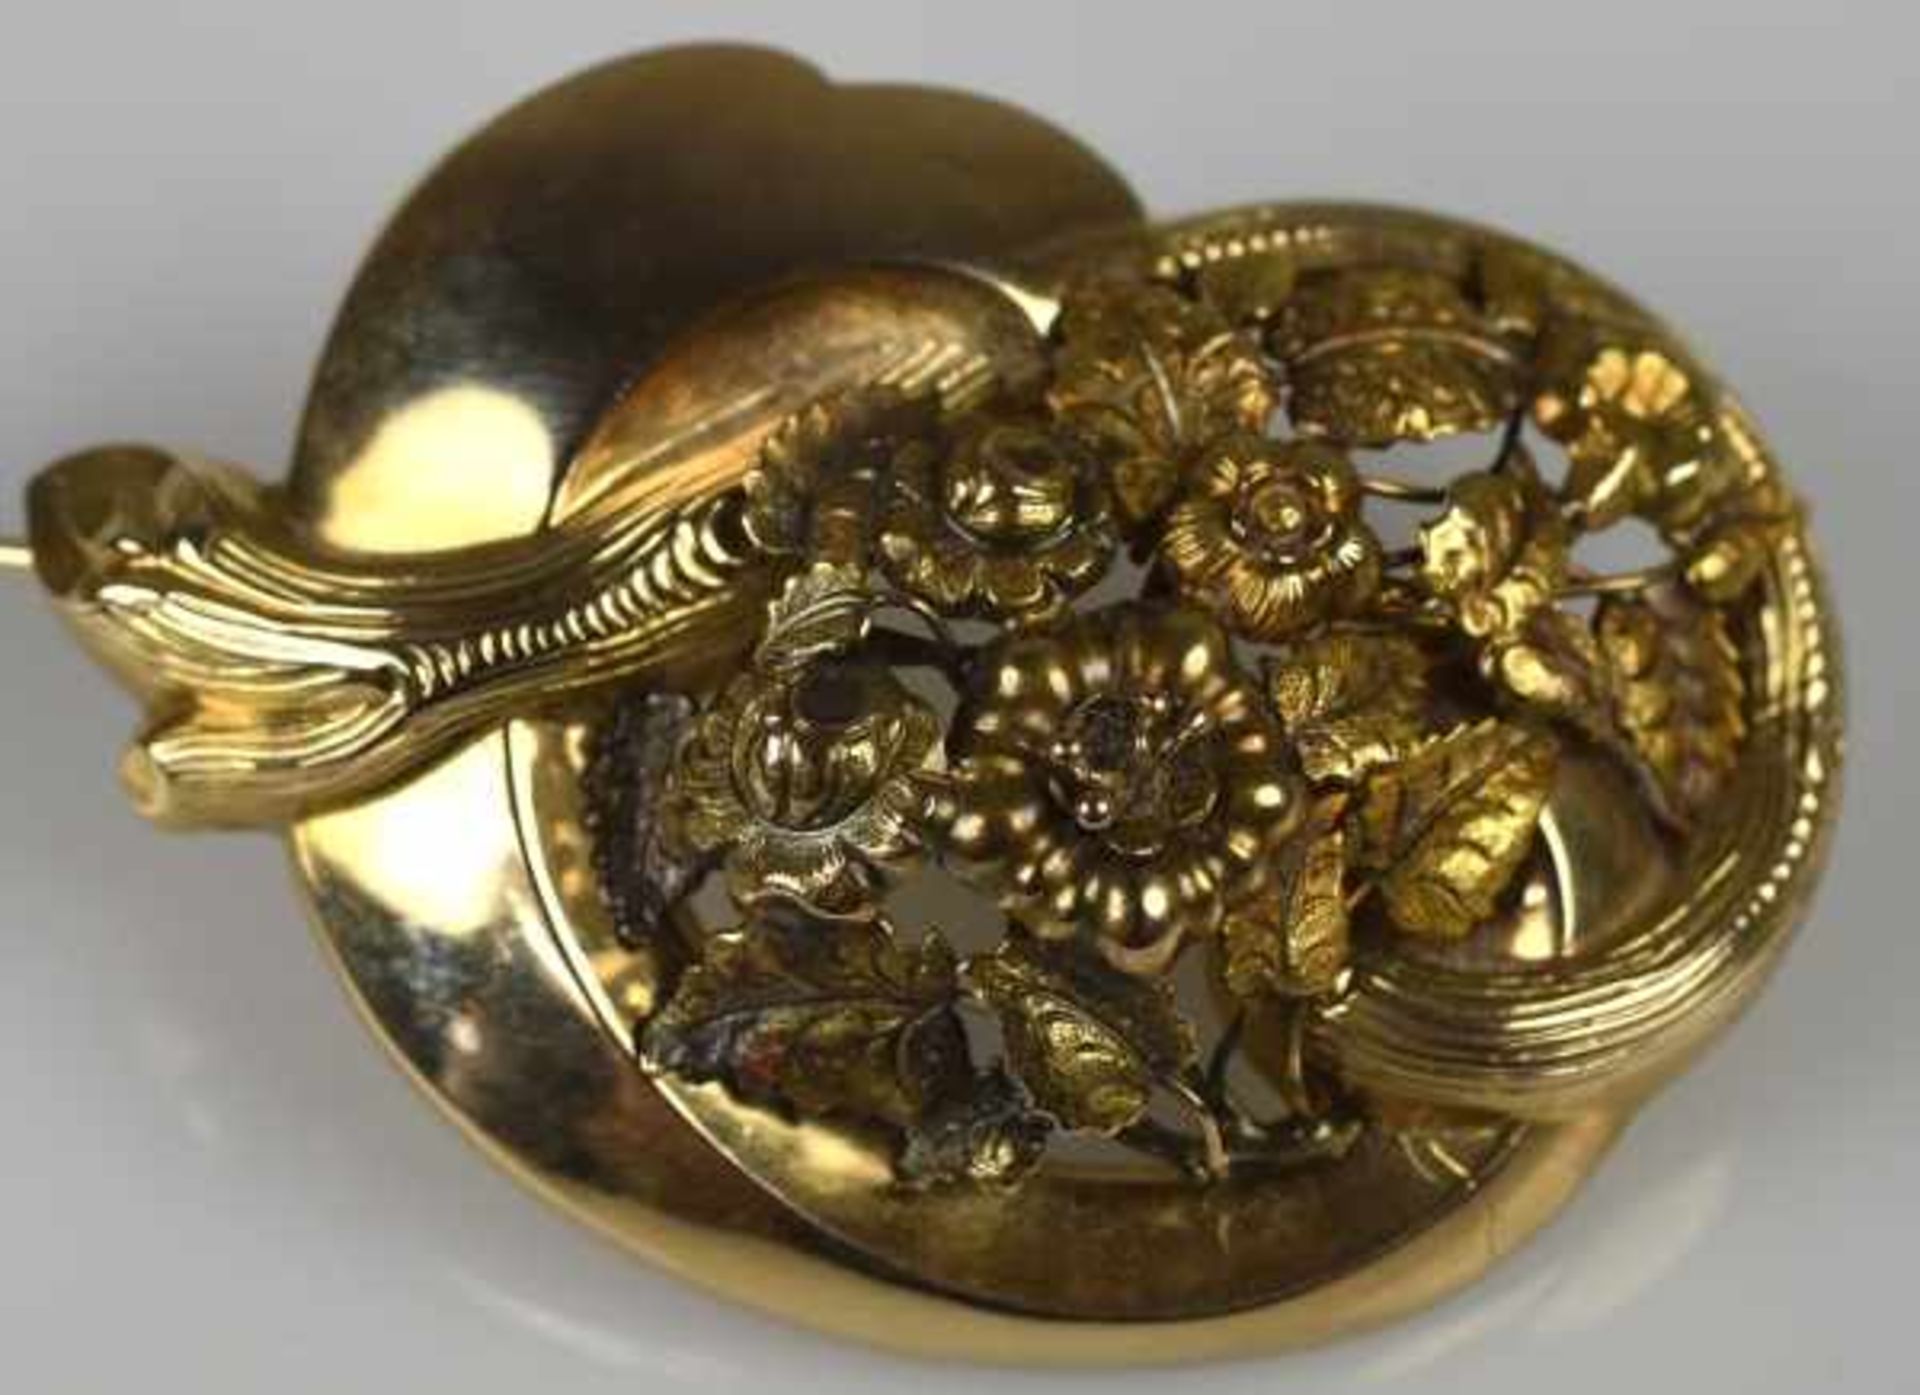 BROSCHE oval geschwungen, mittig plastisches Blütenarrangement, Schaumgold, antik, 19.Jh., - Bild 2 aus 2